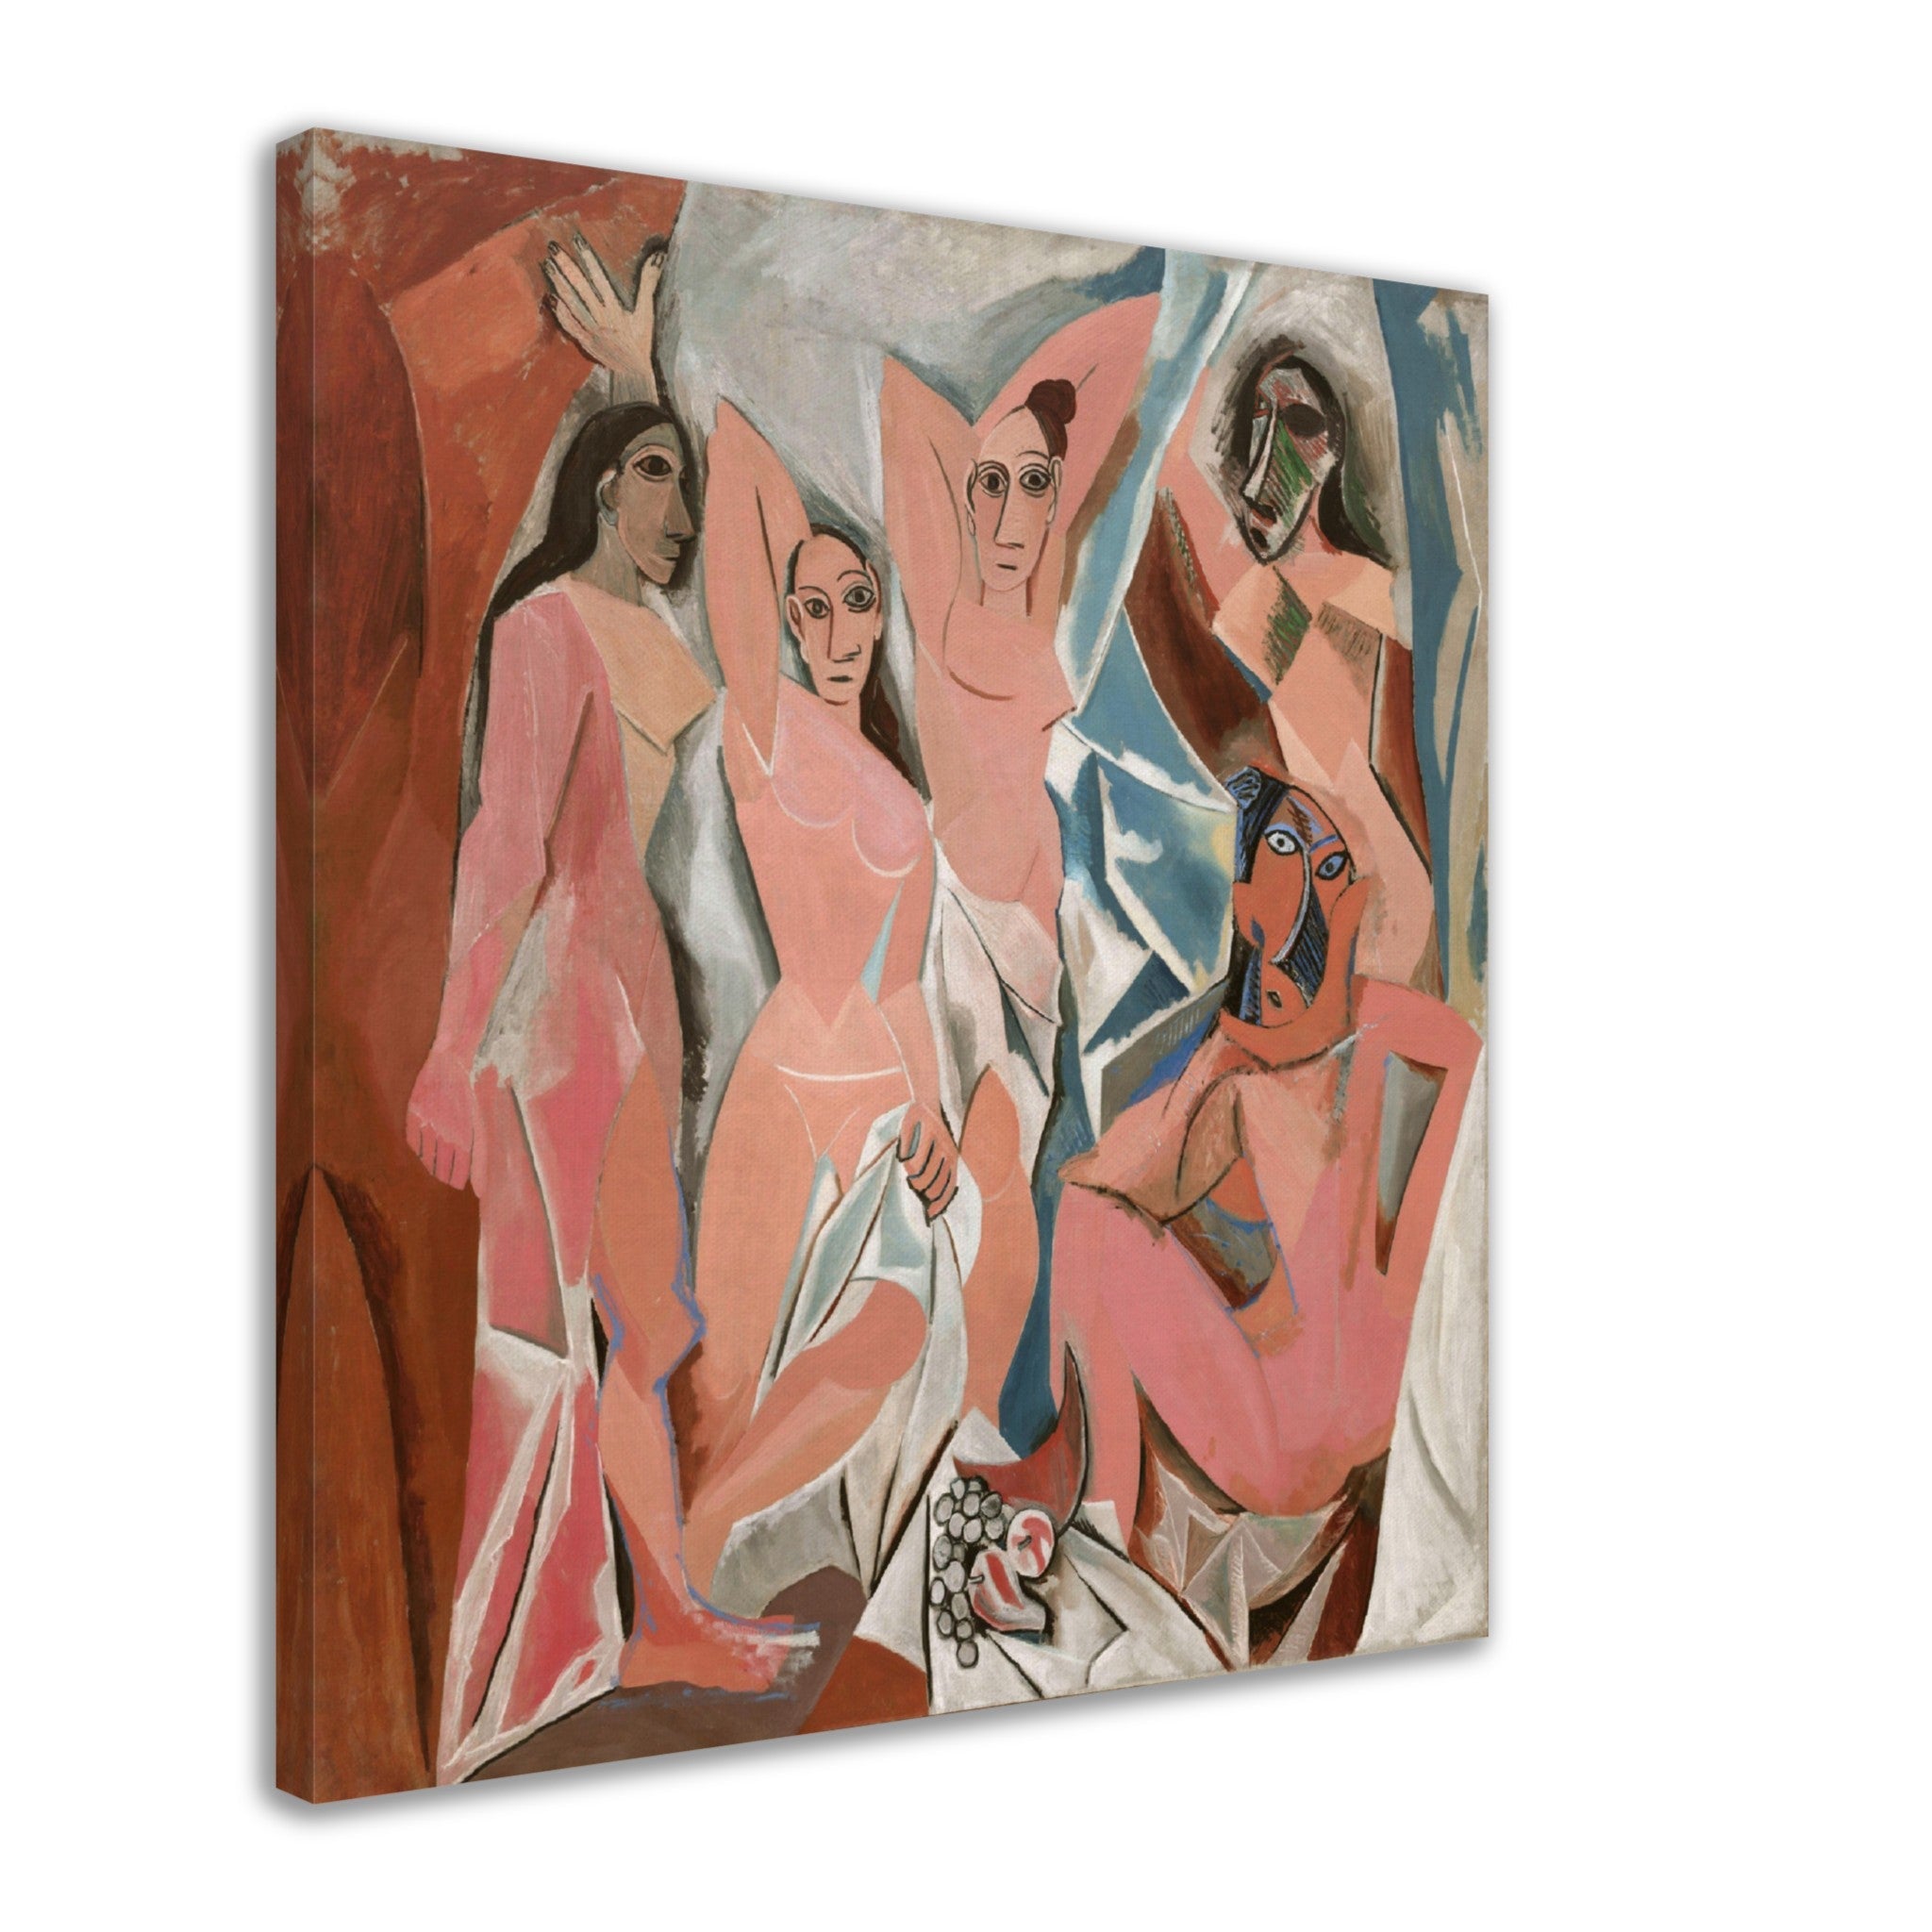 Picasso Canvas, Les Demoiselles D'Avignon, Picasso Canvas Print, Pablo Picasso 1907 - WallArtPrints4U